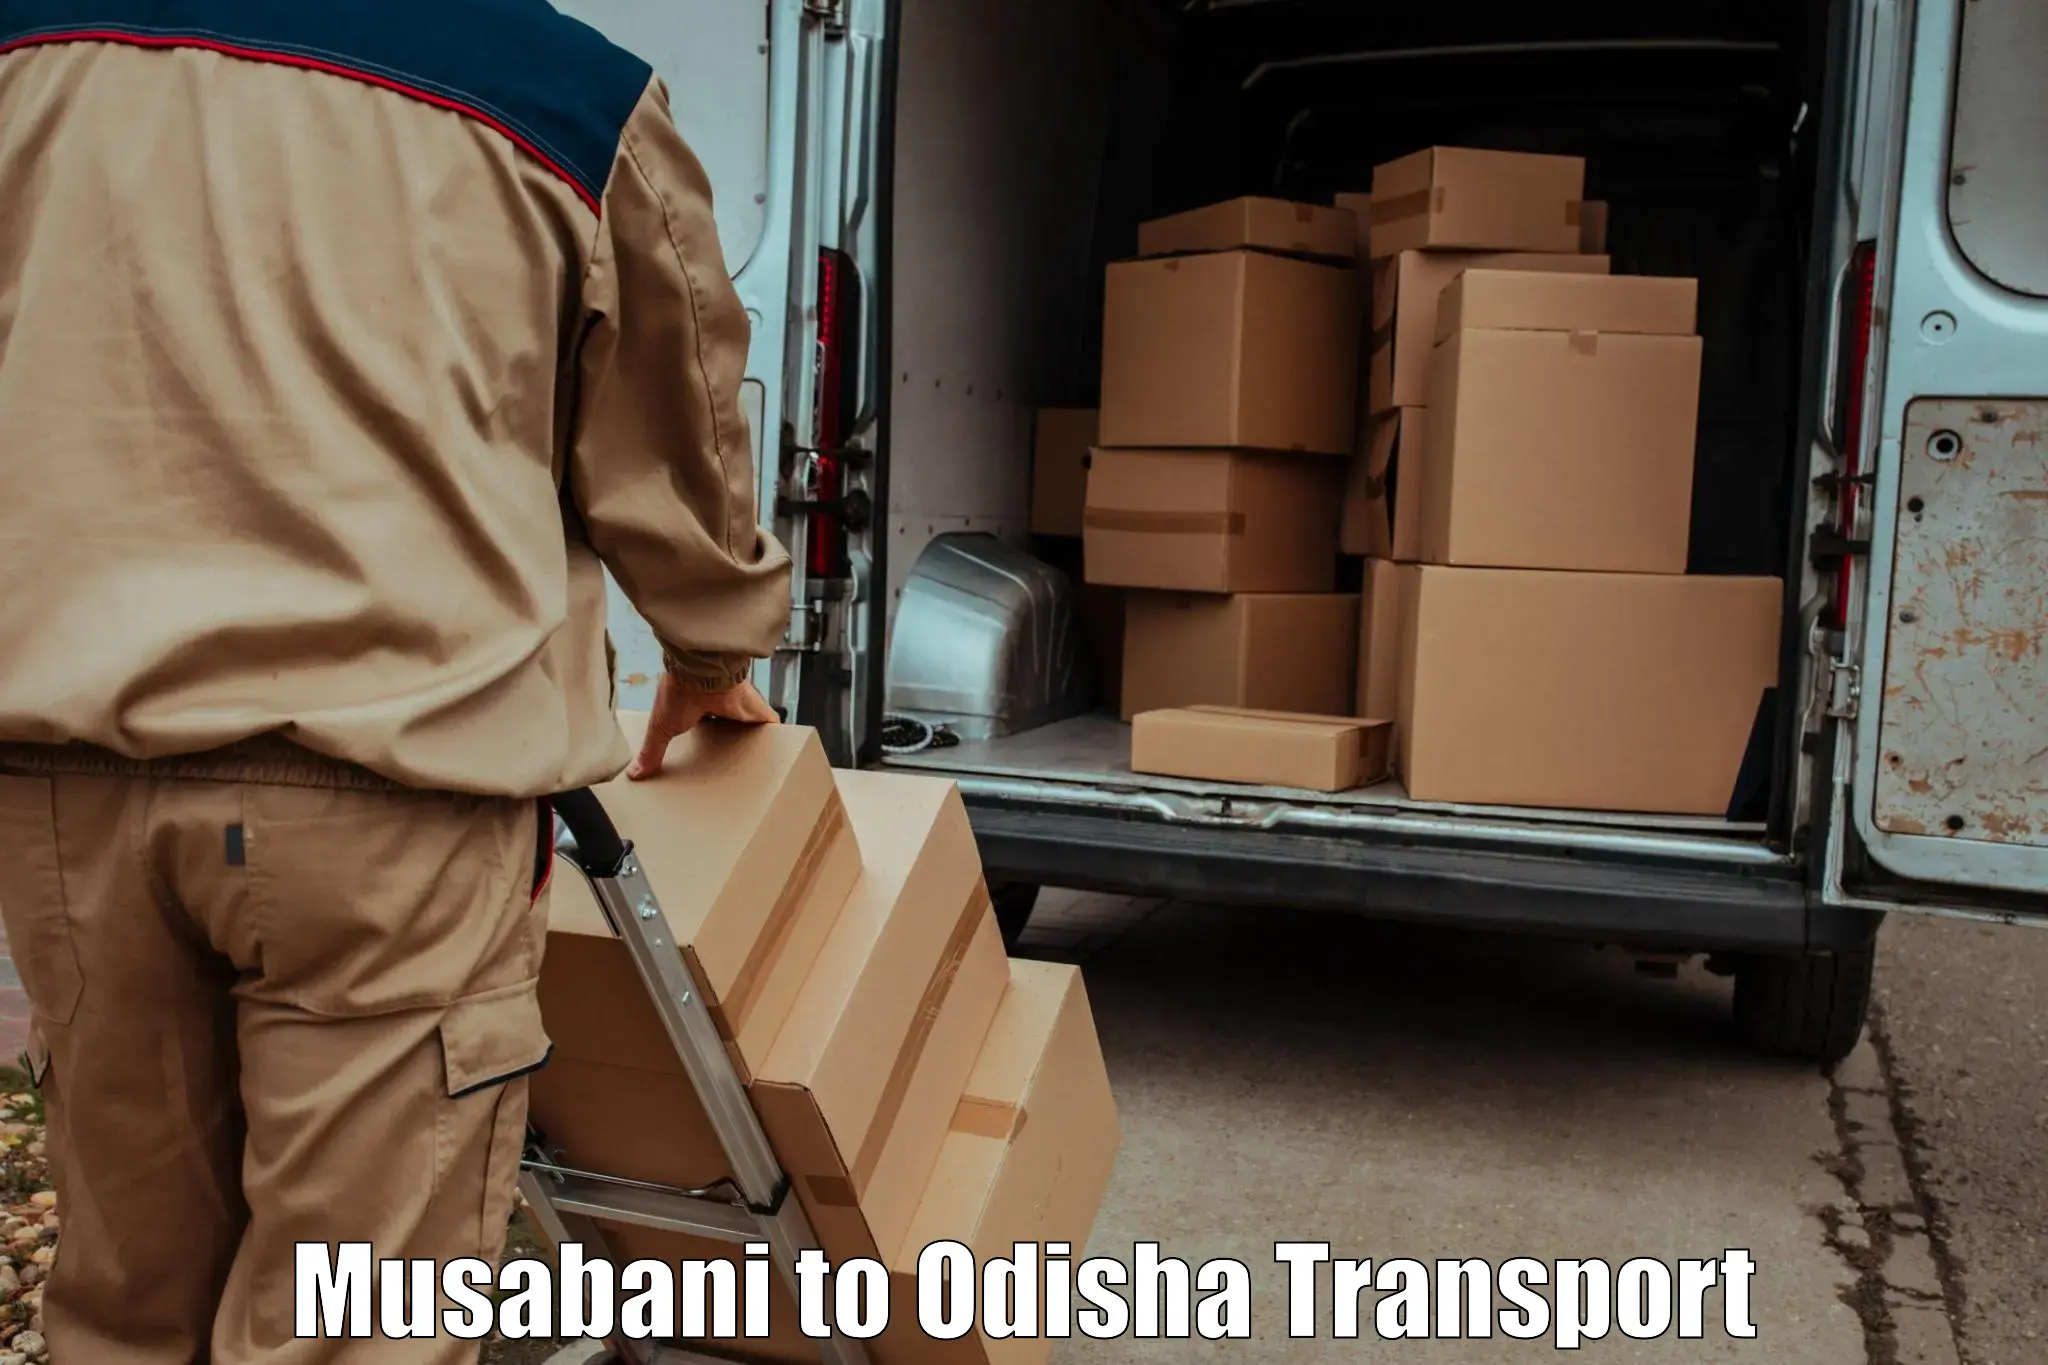 Pick up transport service Musabani to Baliapal